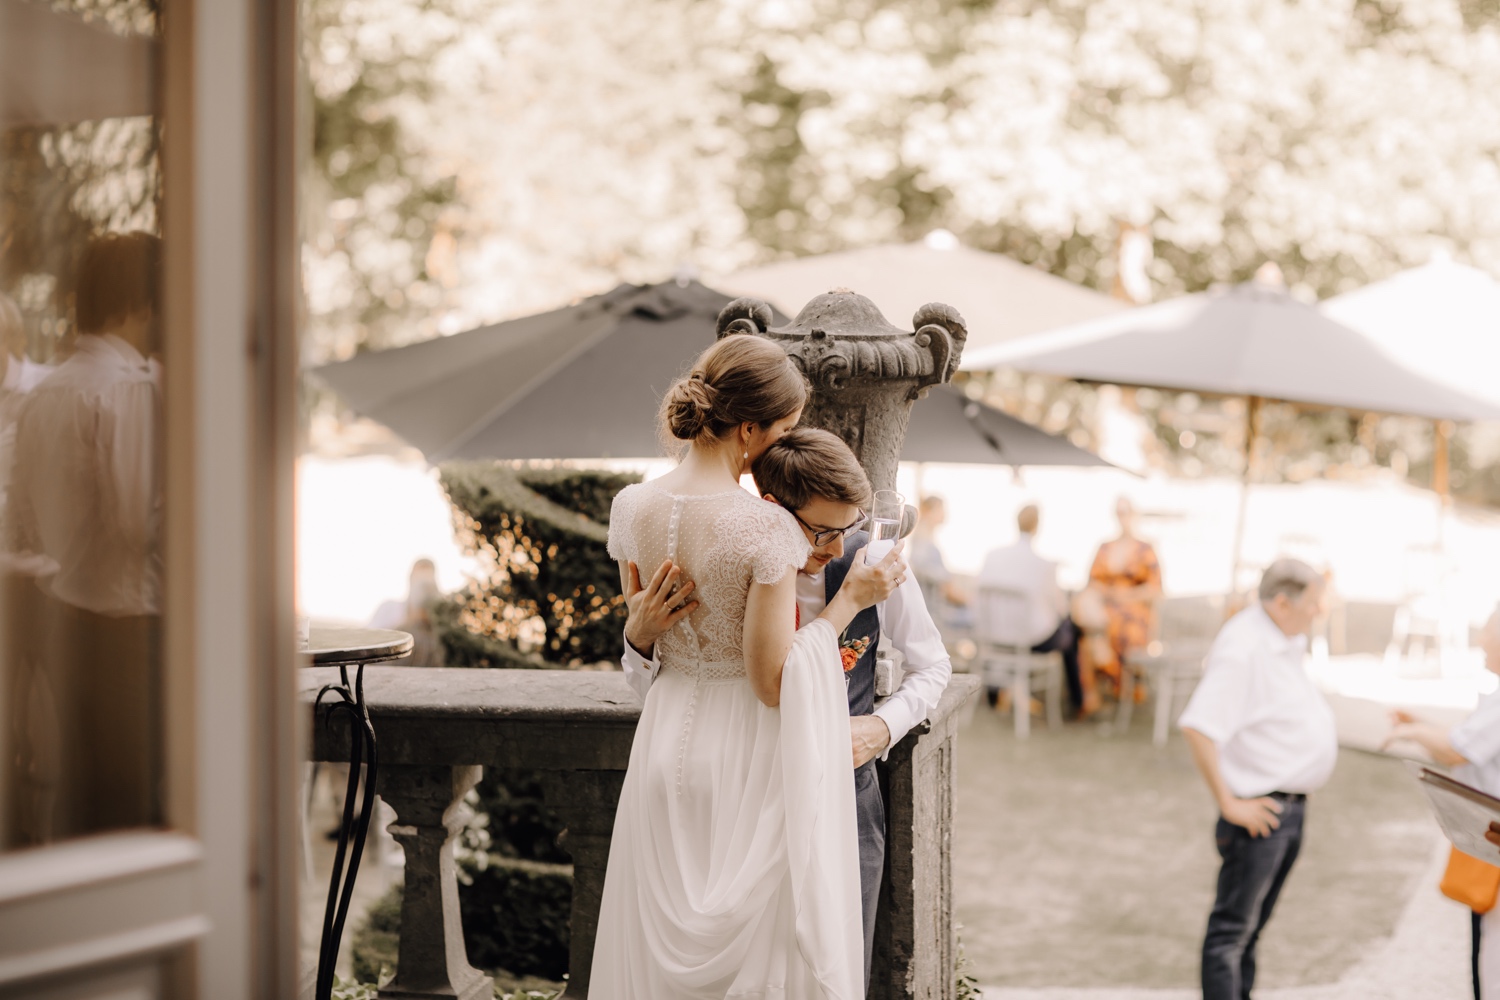 Huwelijksfotograaf Limburg - bruidspaar knuffelt tijdens receptie